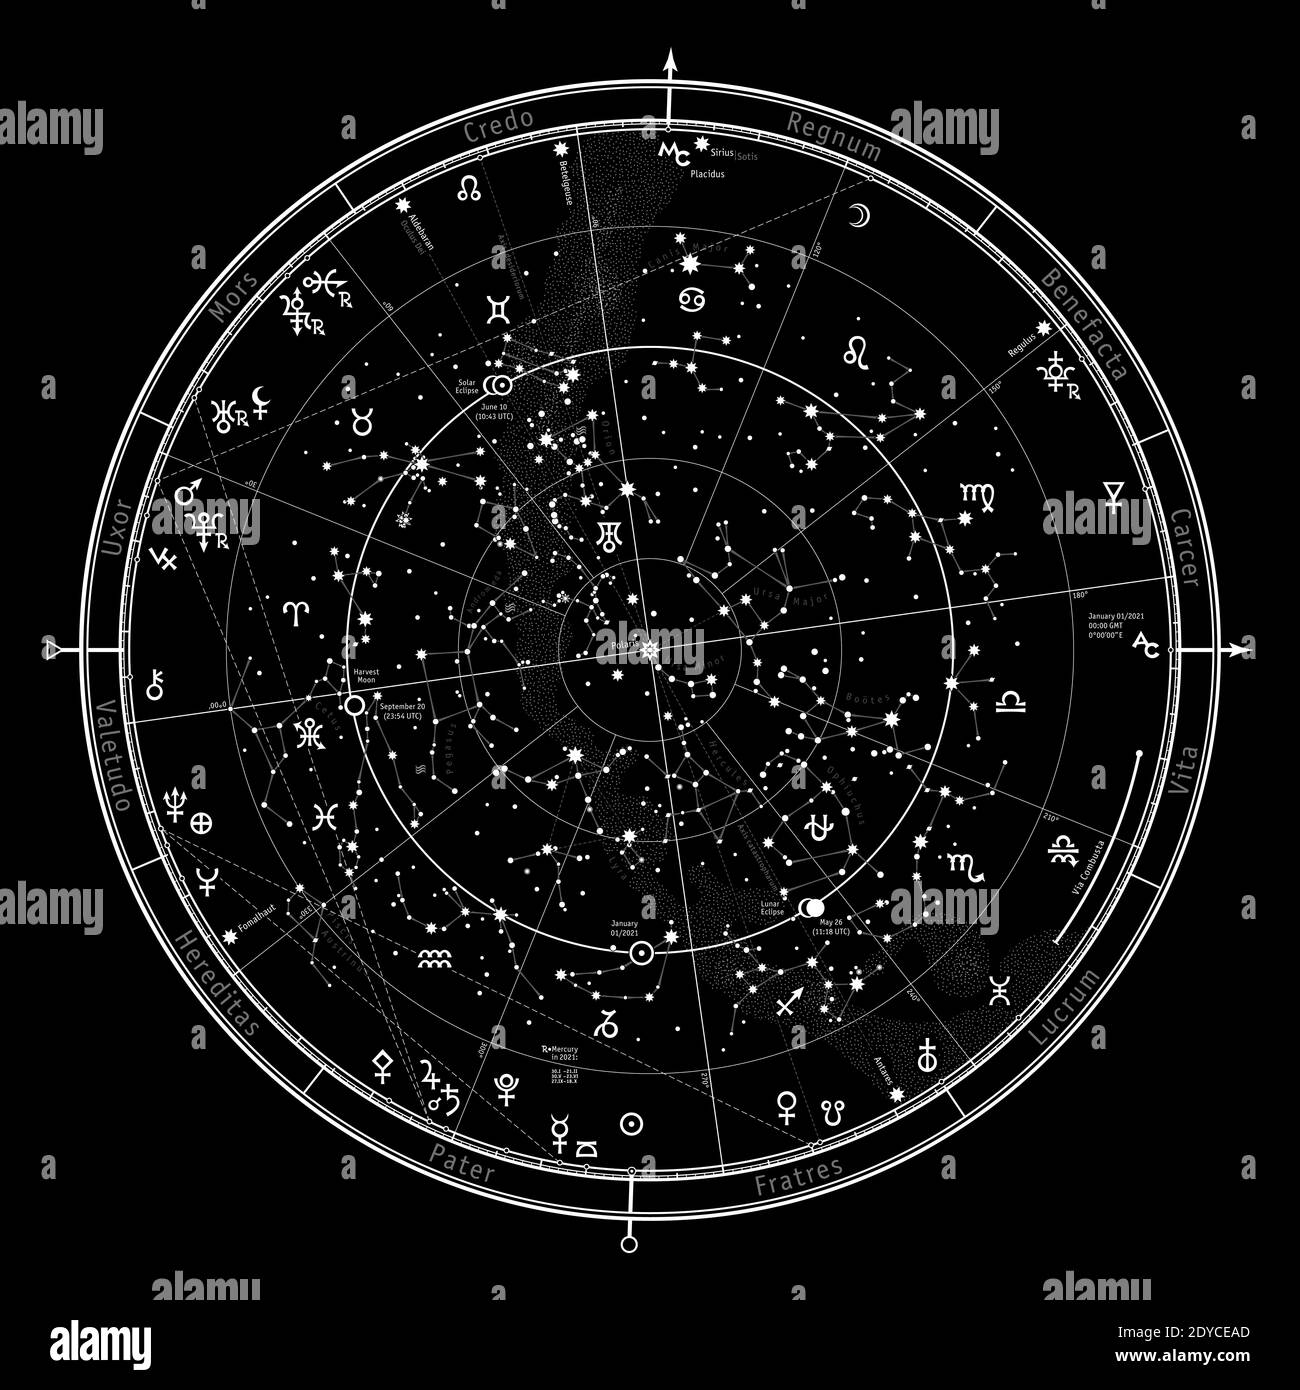 Astrologische Himmelskarte der nördlichen Hemisphäre. Horoskop für 2021. Stockfoto